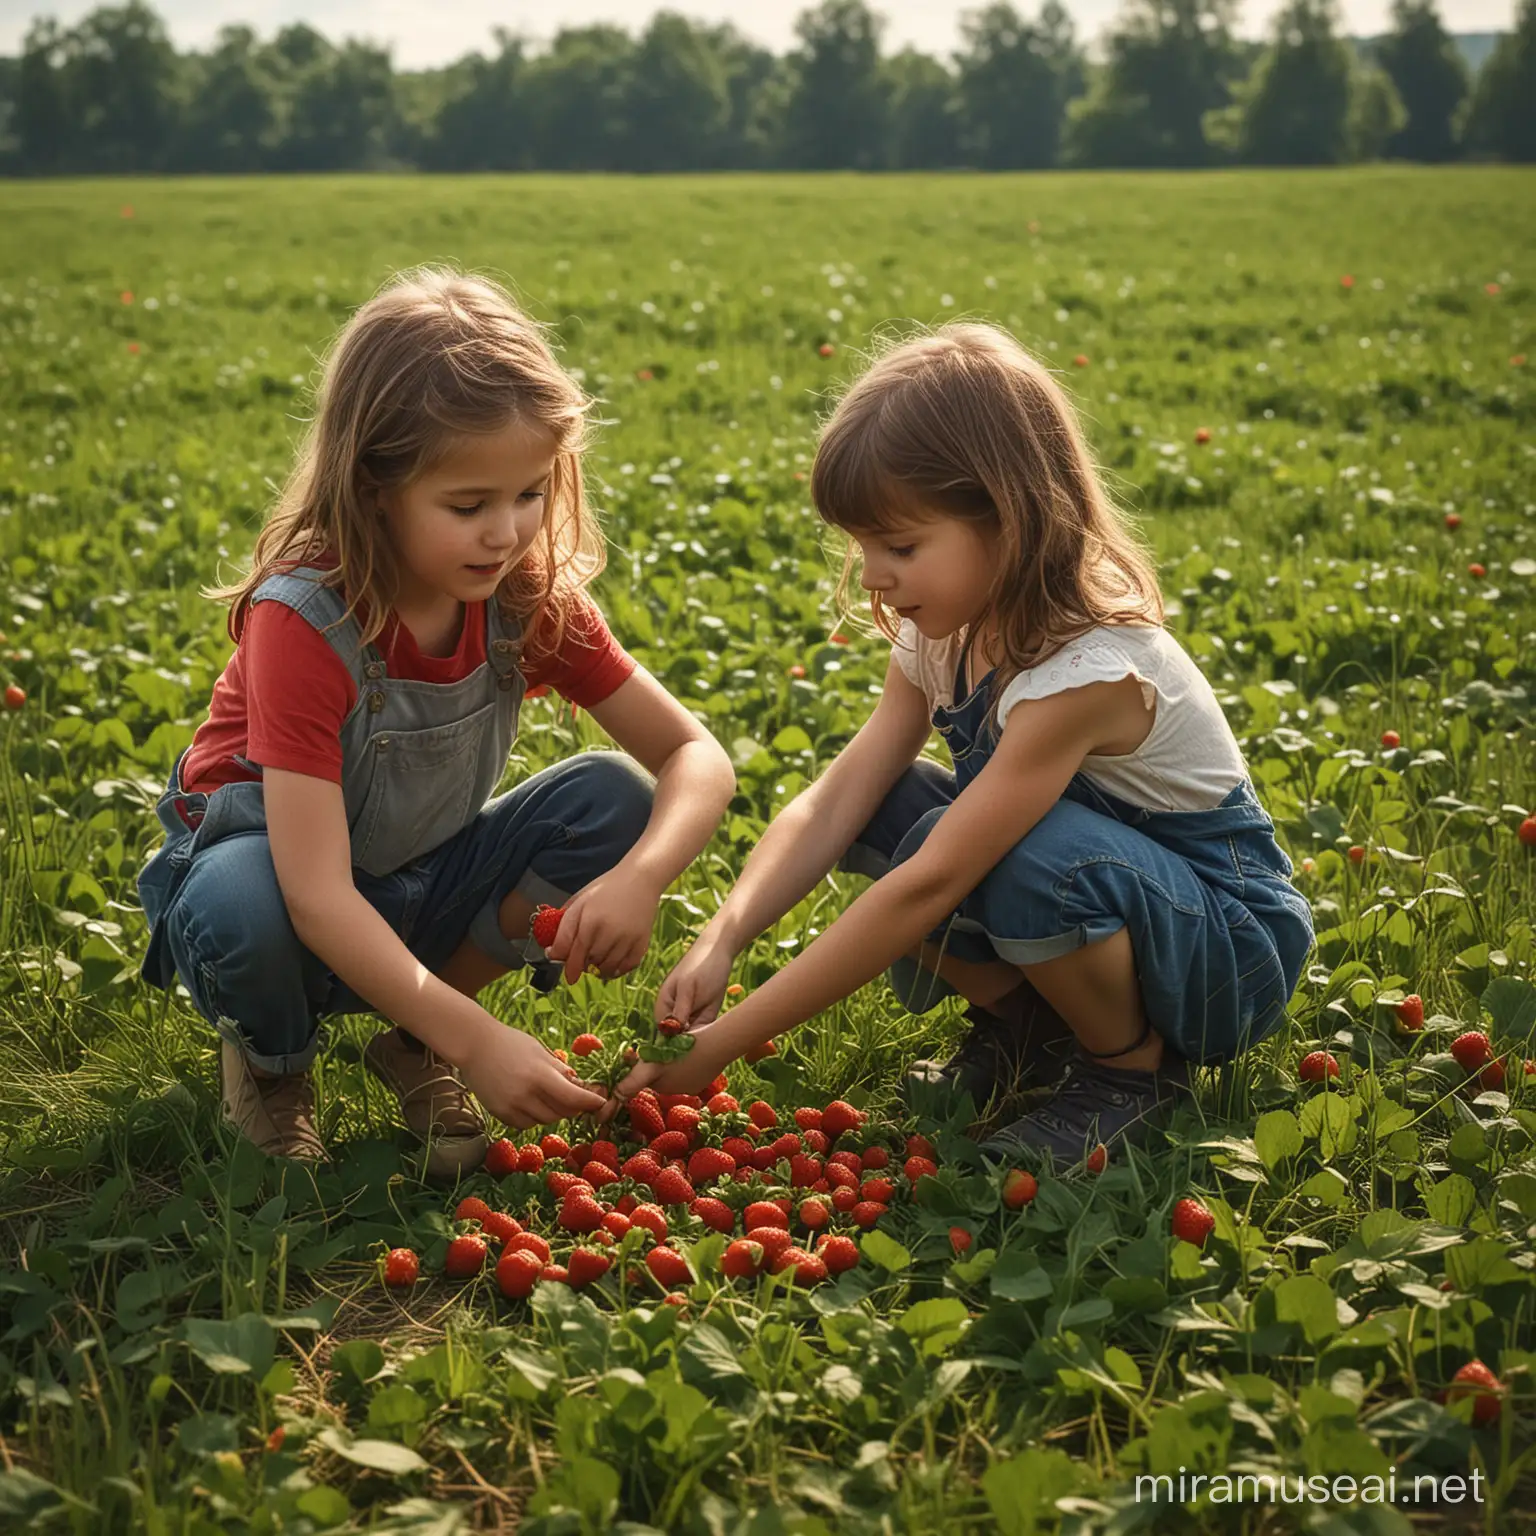 в стили хуудожника ..дети собирают землянику в траве в поле. контражурр освещение.